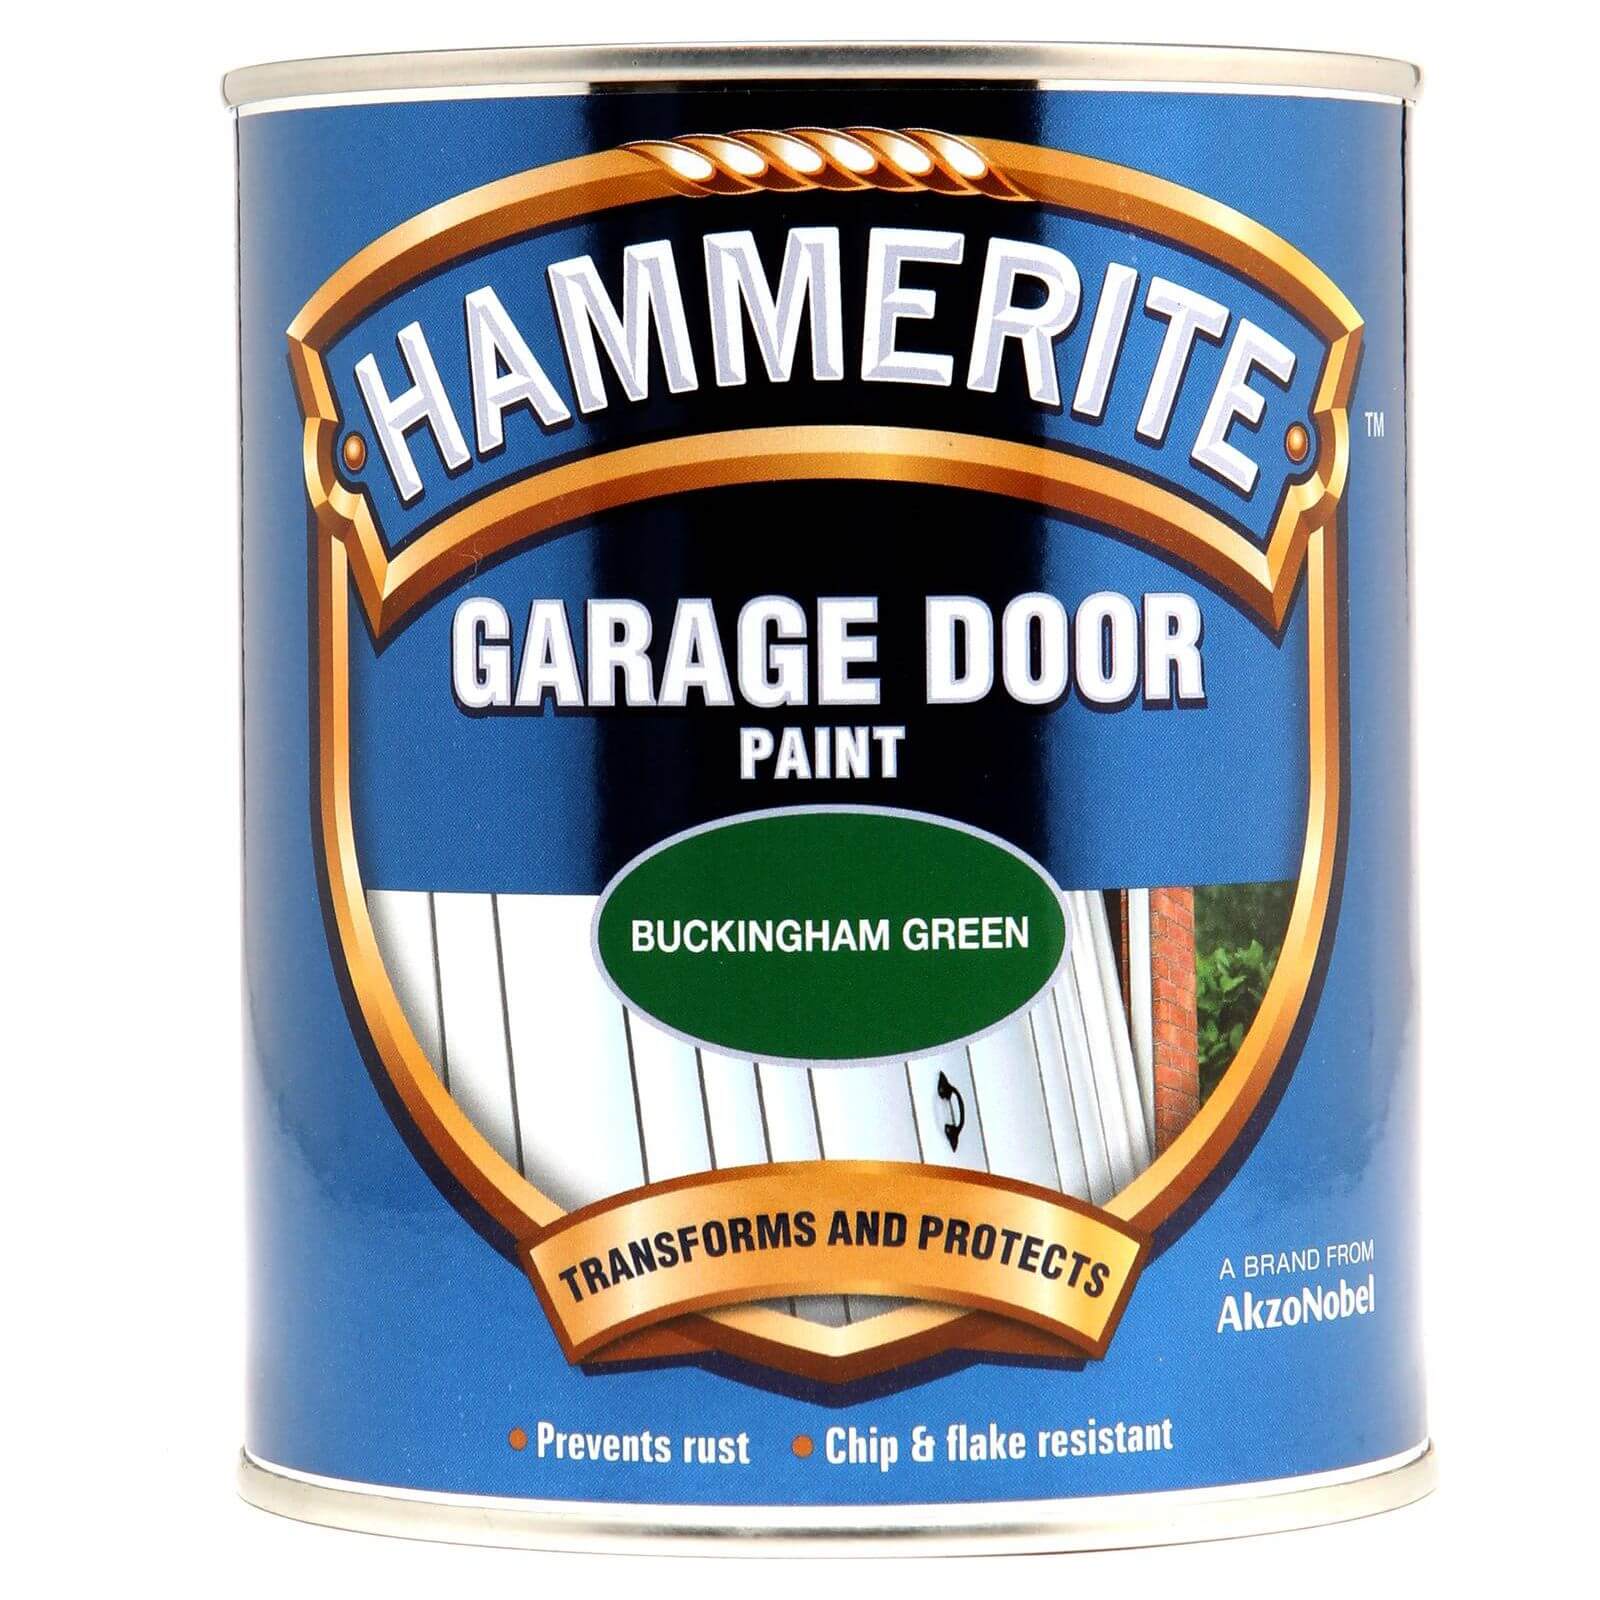 Hammerite Garage Door Paint Buckingham Green - 750ml